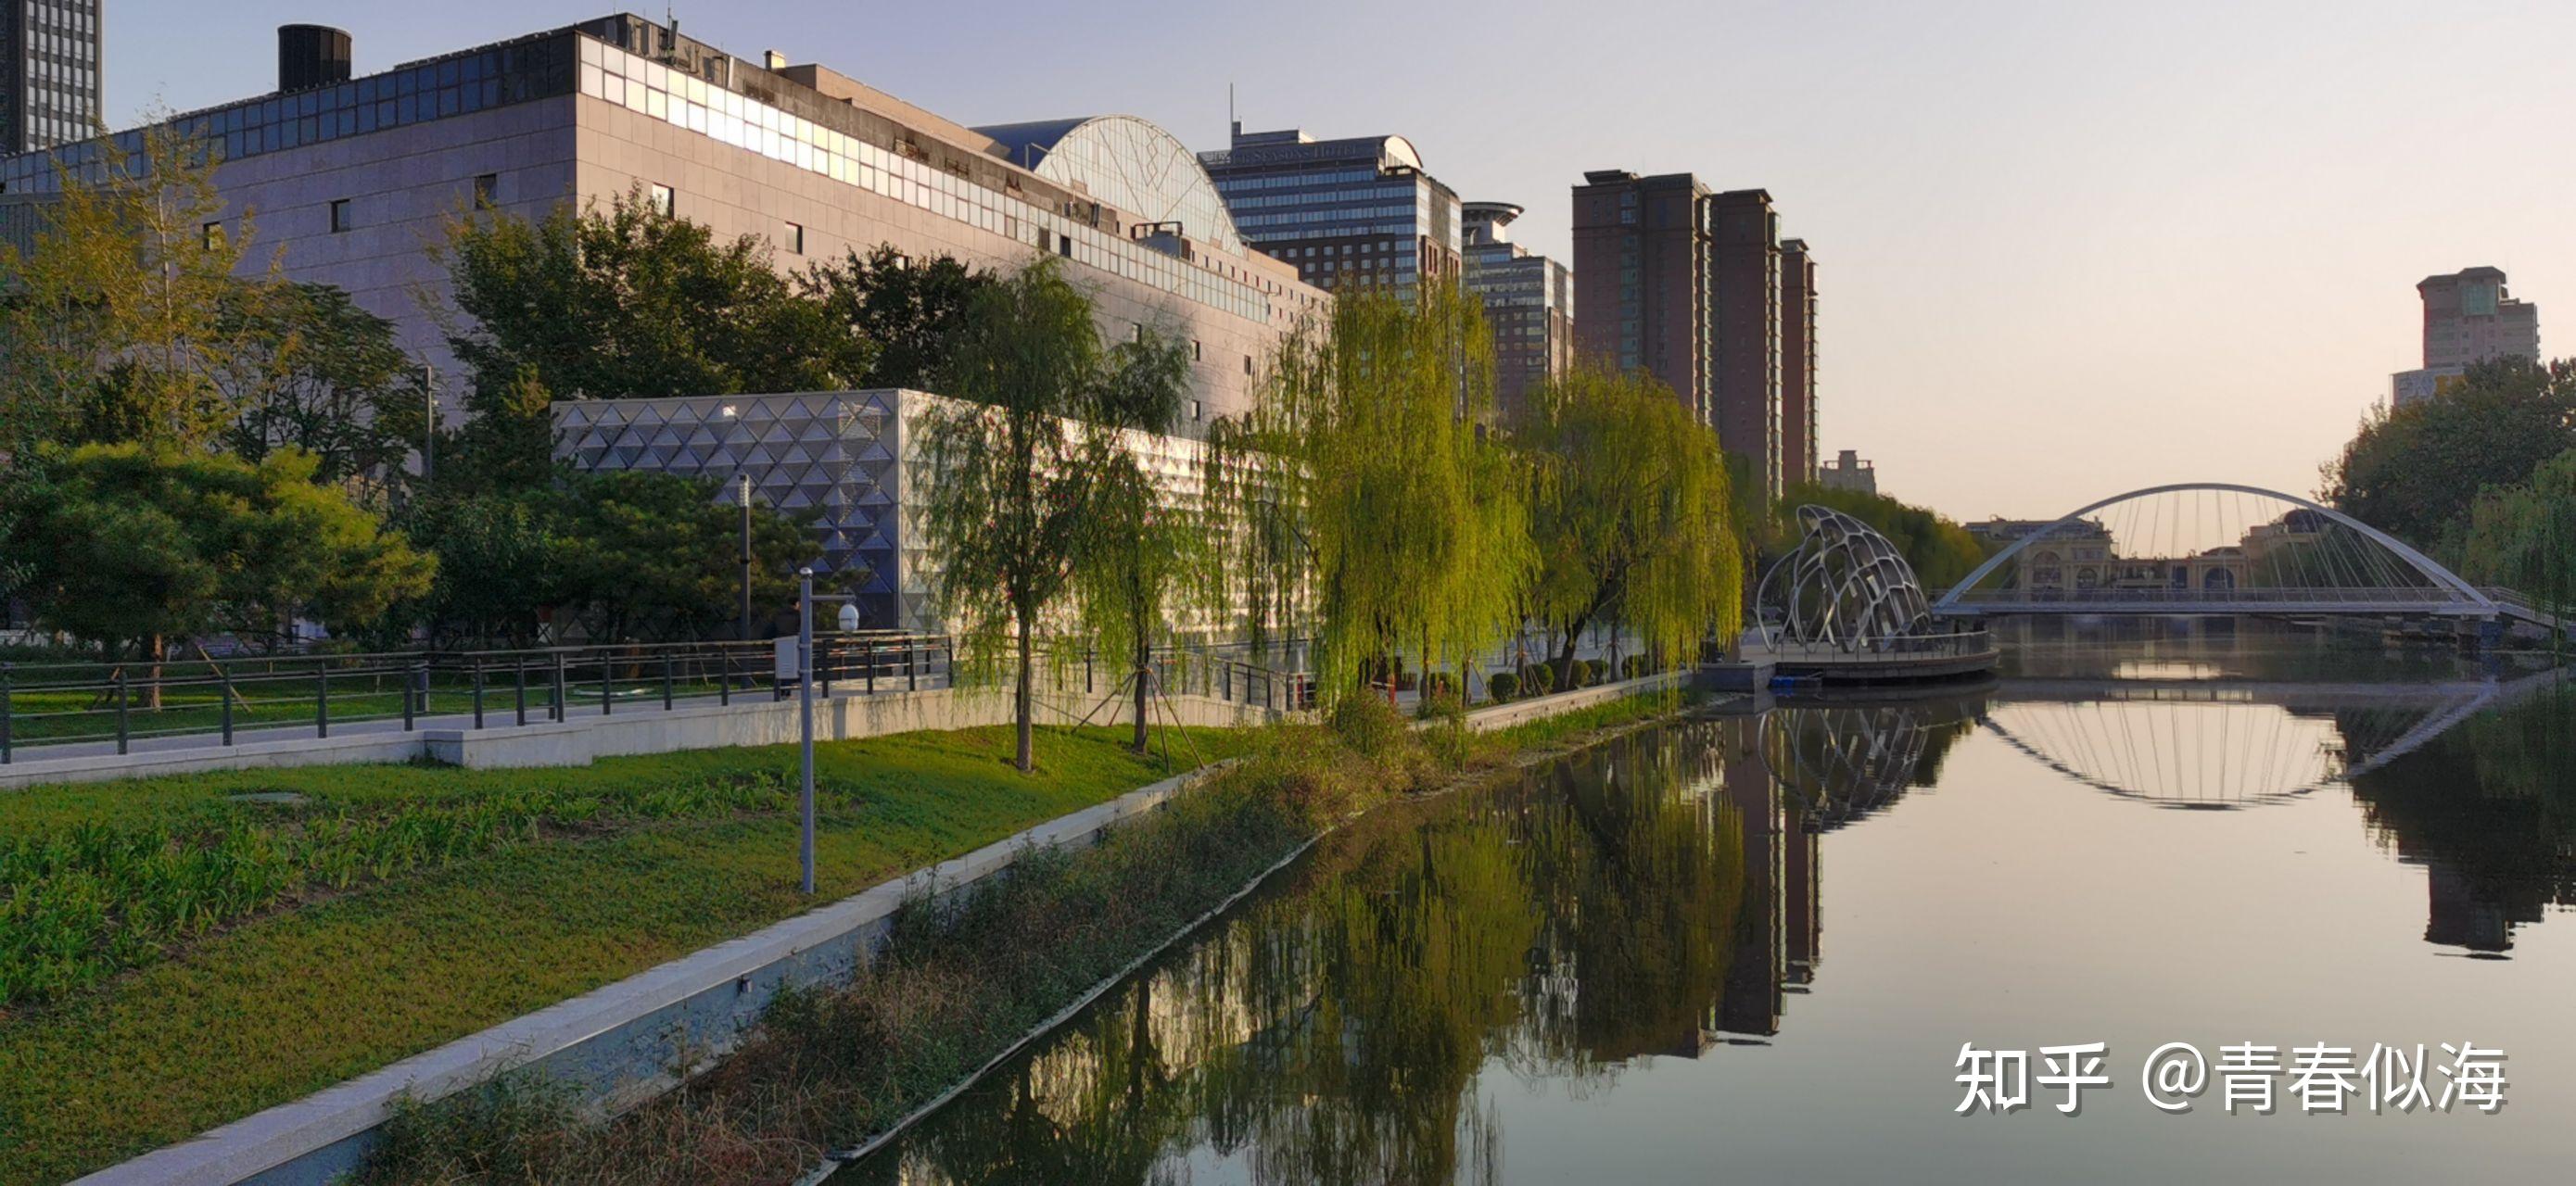 北京亮马河景观改造 带动沿线观光餐饮消费 | TTG BTmice